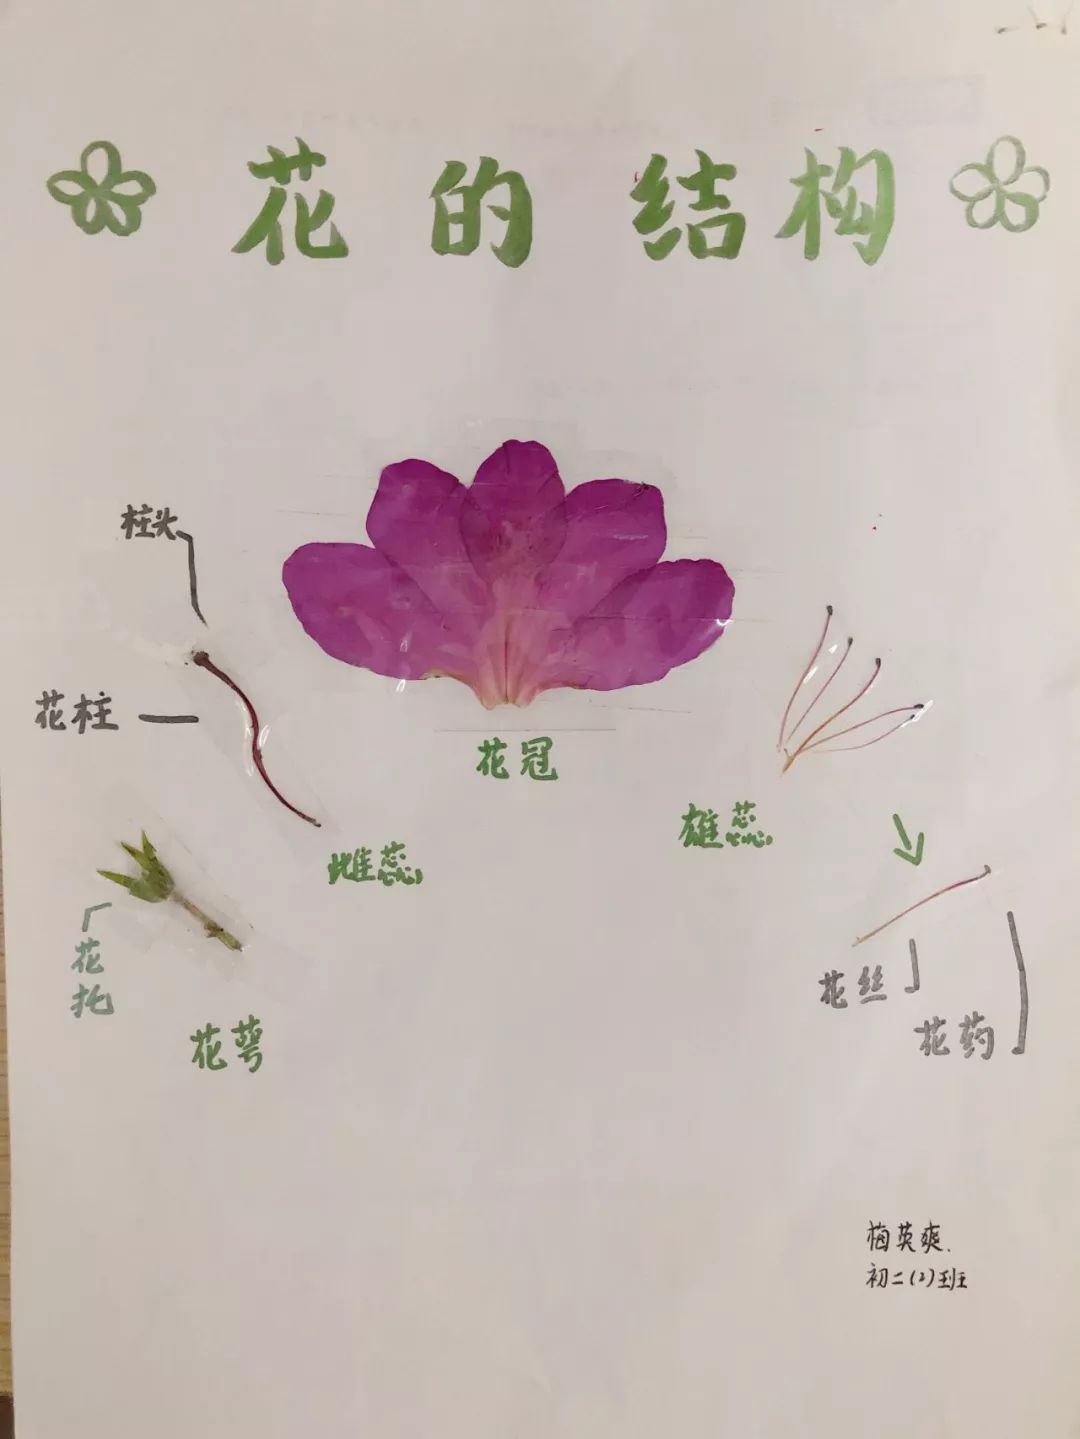 解剖海棠花图片